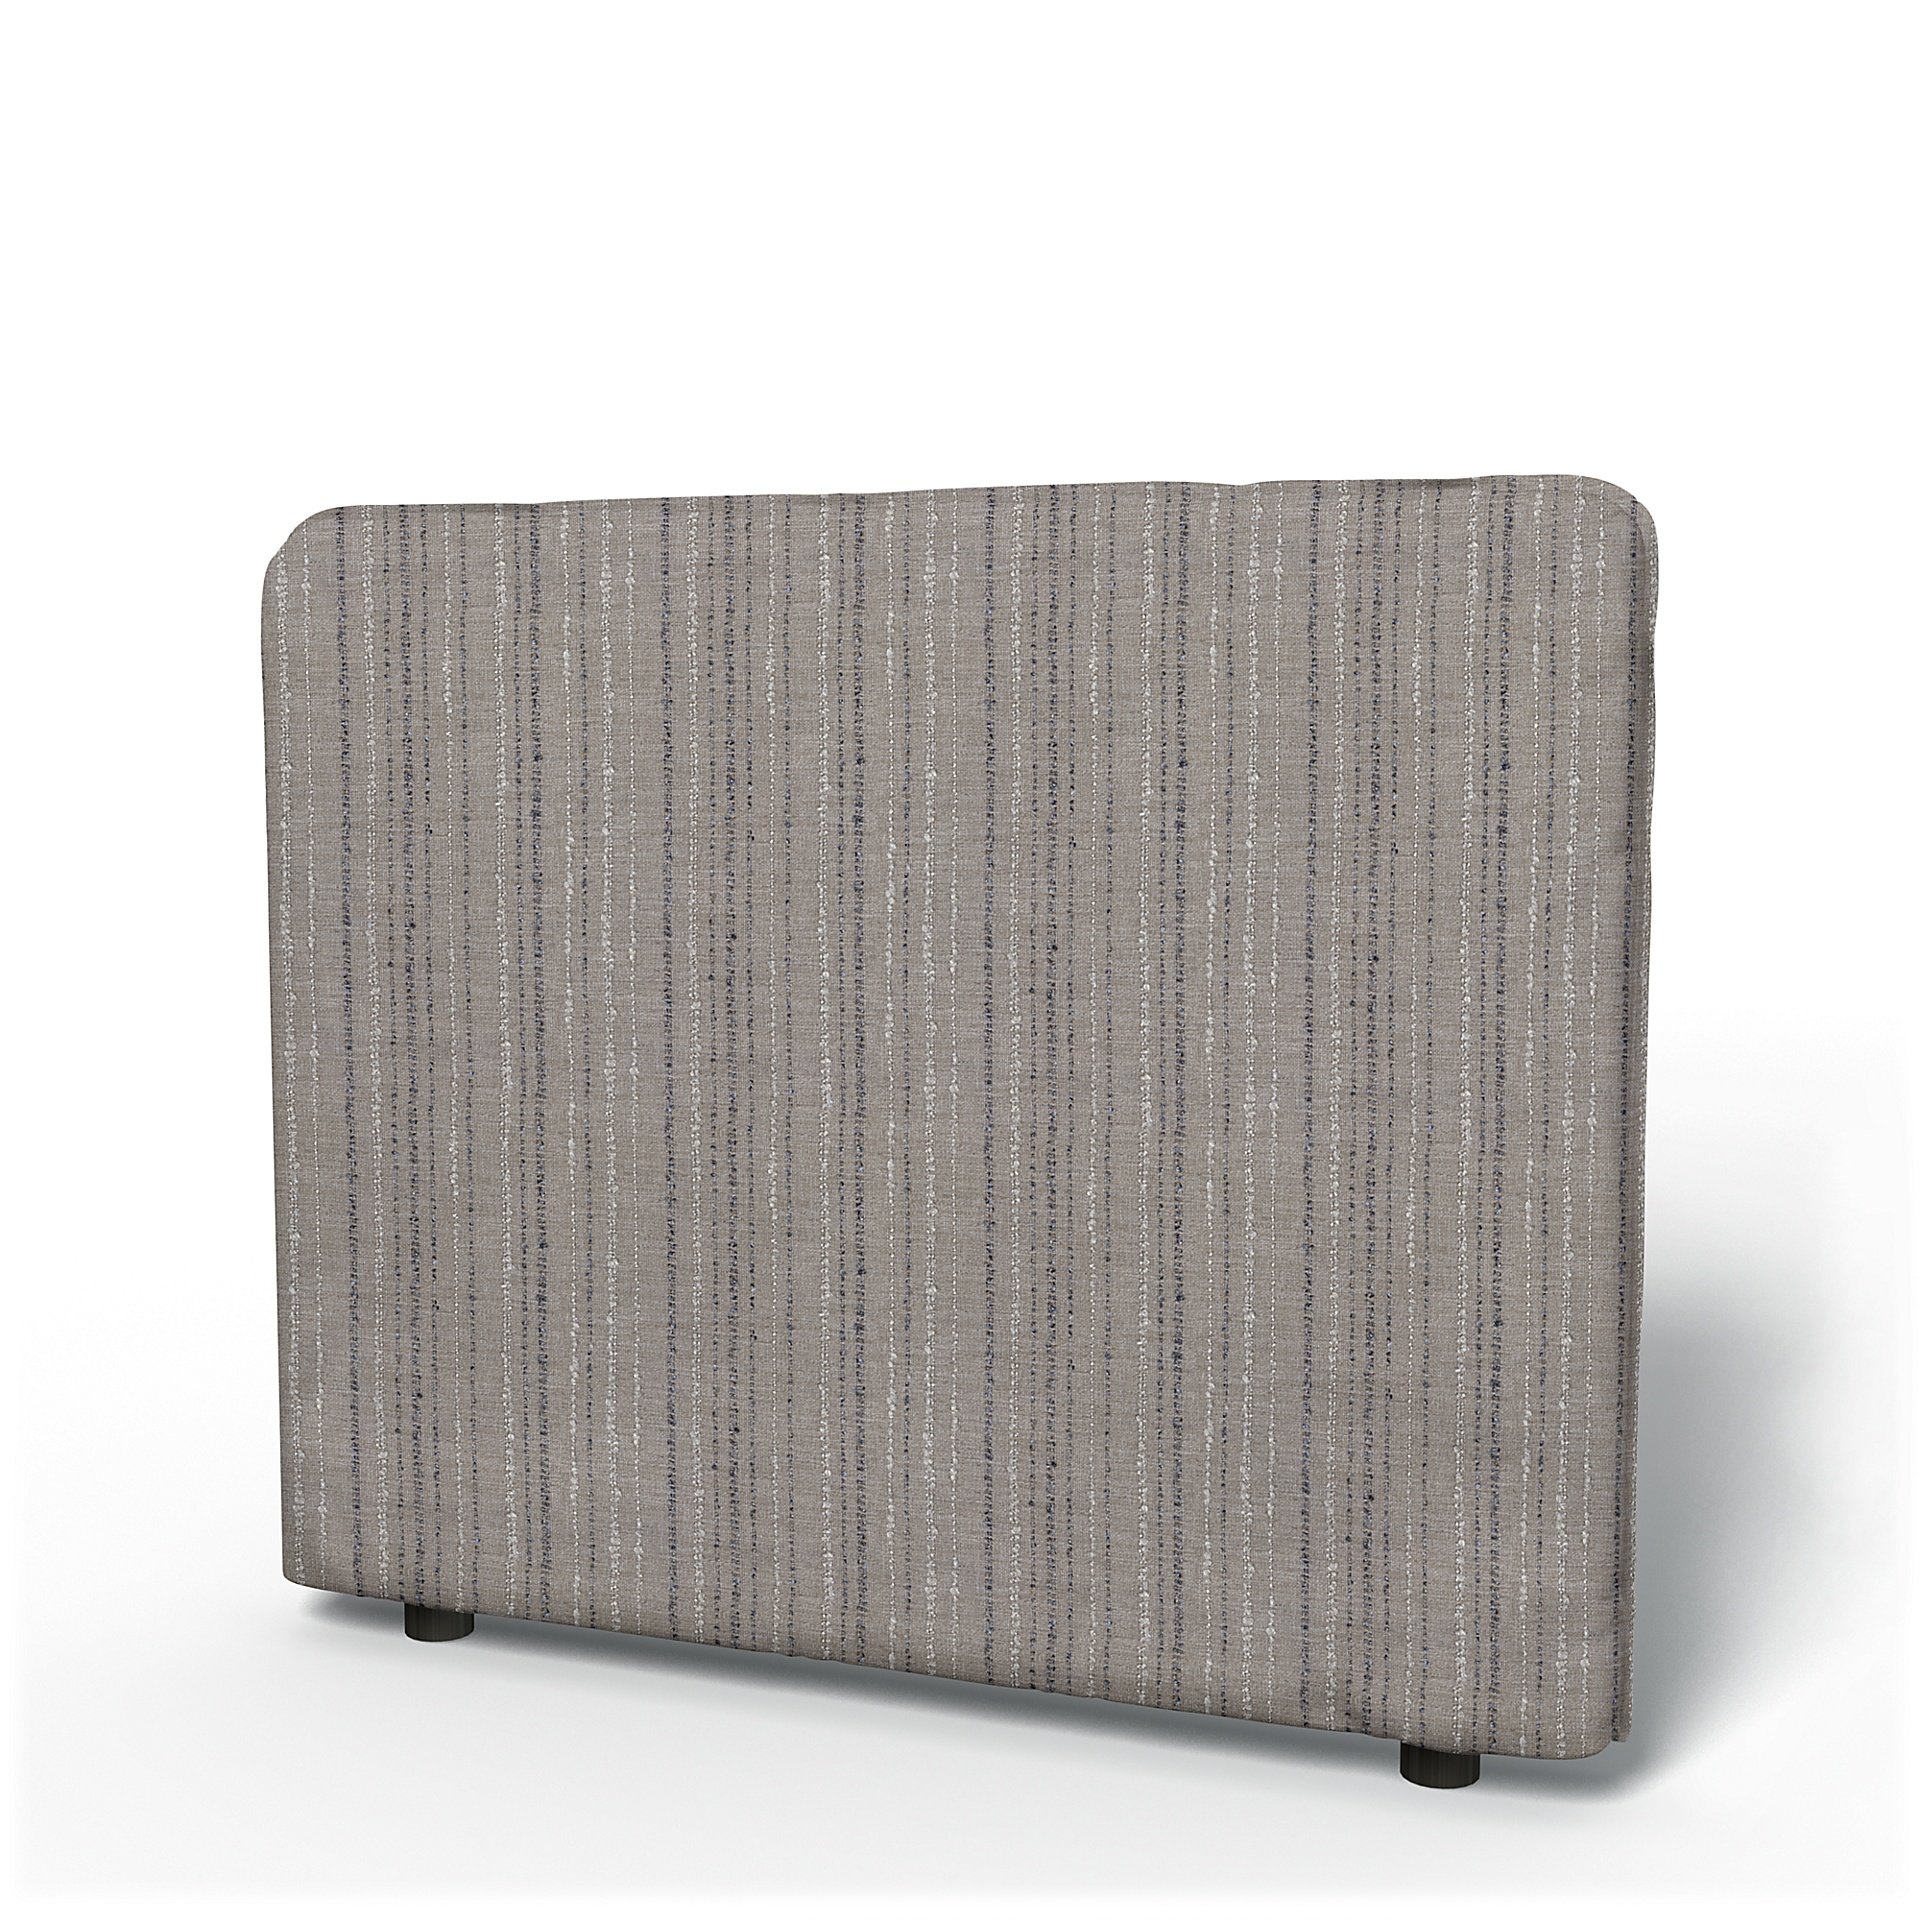 IKEA - Vallentuna Low Backrest Cover 100x80cm 39x32in, , Boucle & Texture - Bemz